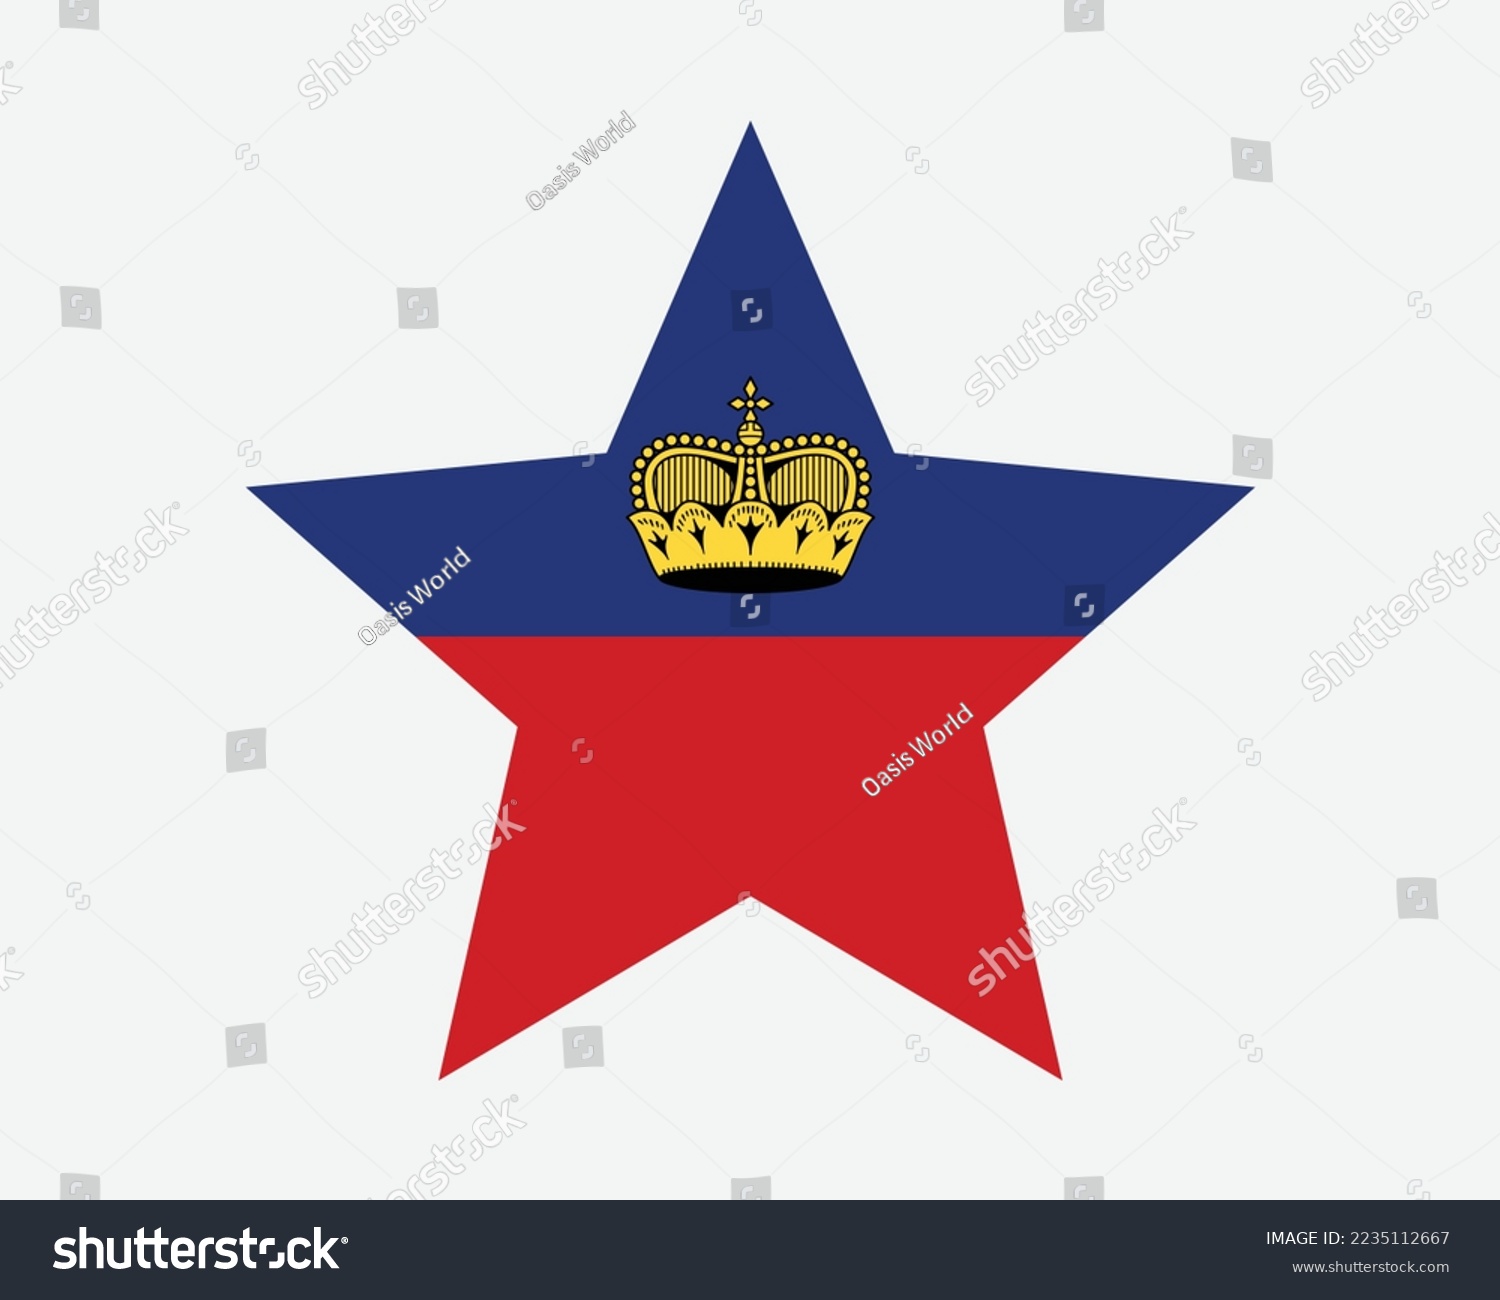 SVG of Liechtenstein Star Flag. Liechtensteiner Star Shape Flag. Country National Banner Icon Symbol Vector Flat Artwork Graphic Illustration svg